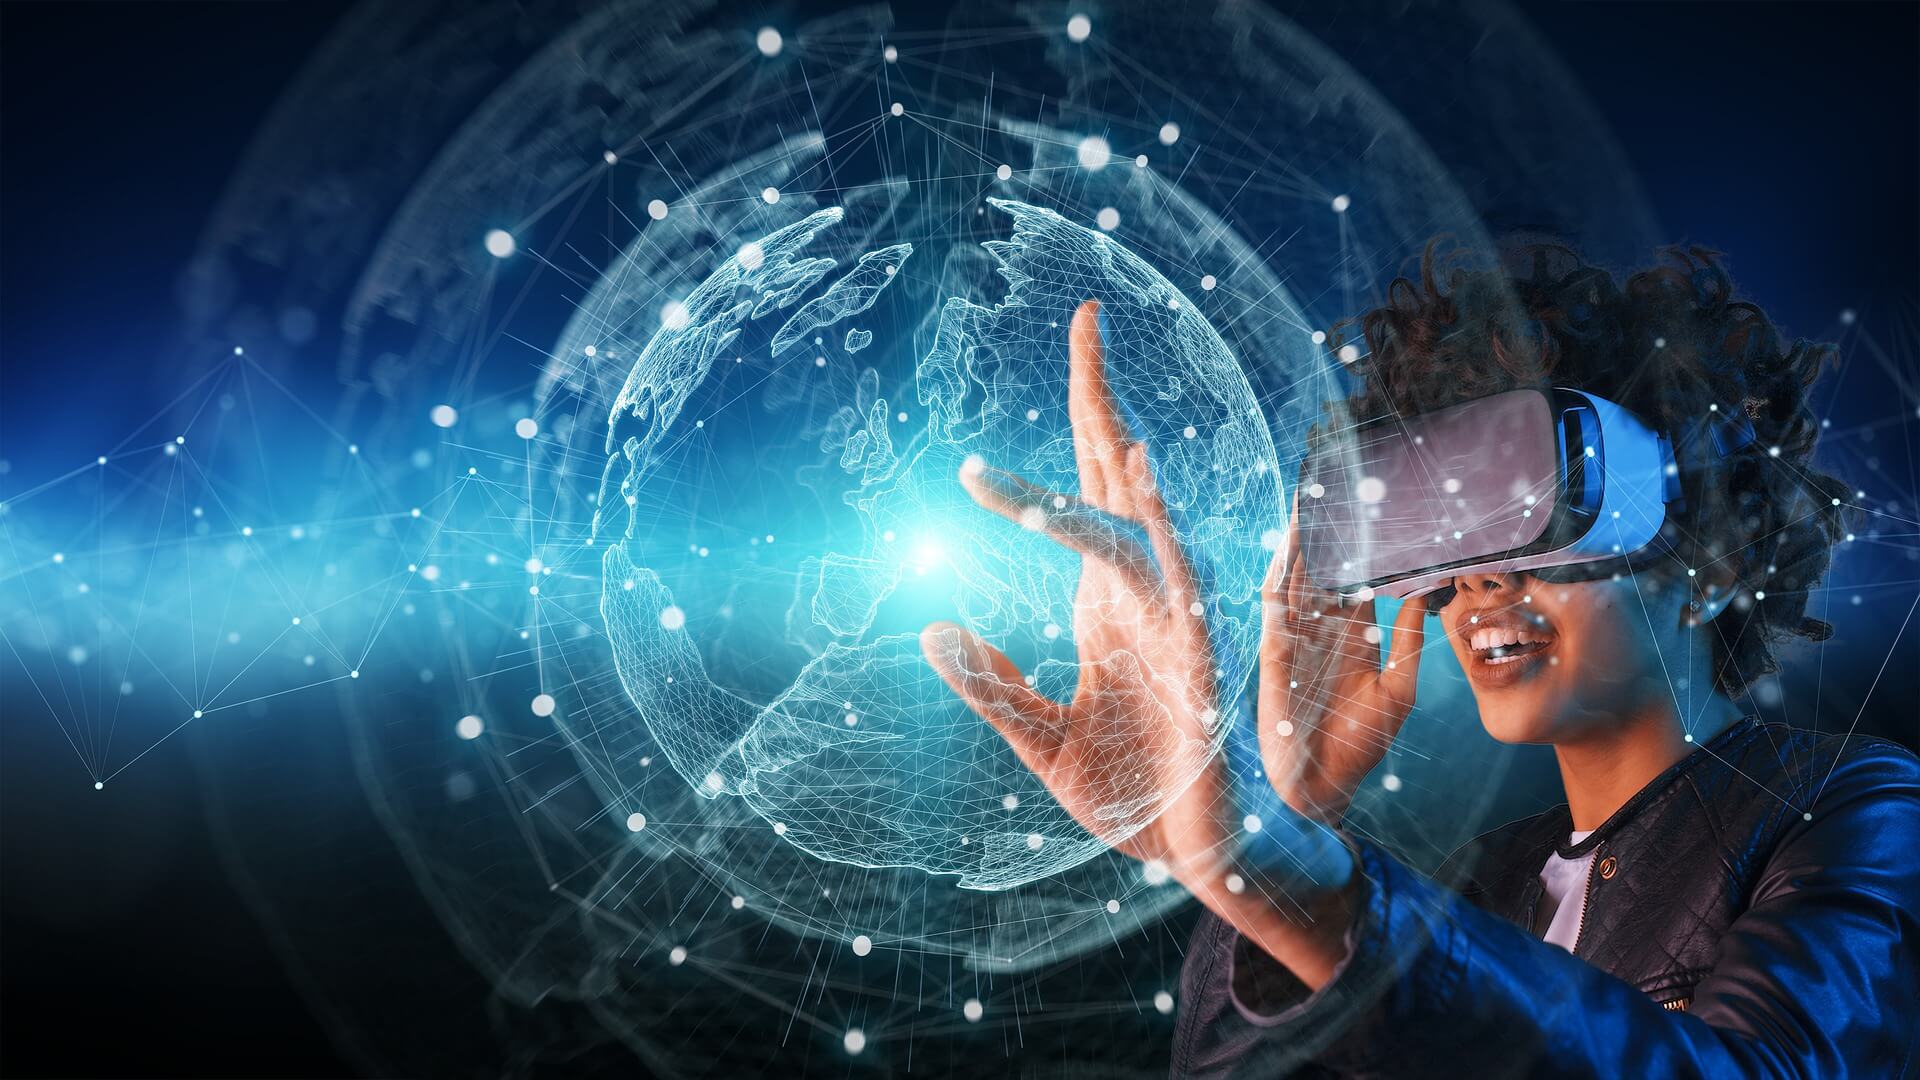 图片展示一位佩戴虚拟现实头盔的人，正用手触碰前方展现的三维数字地球，科技感十足。